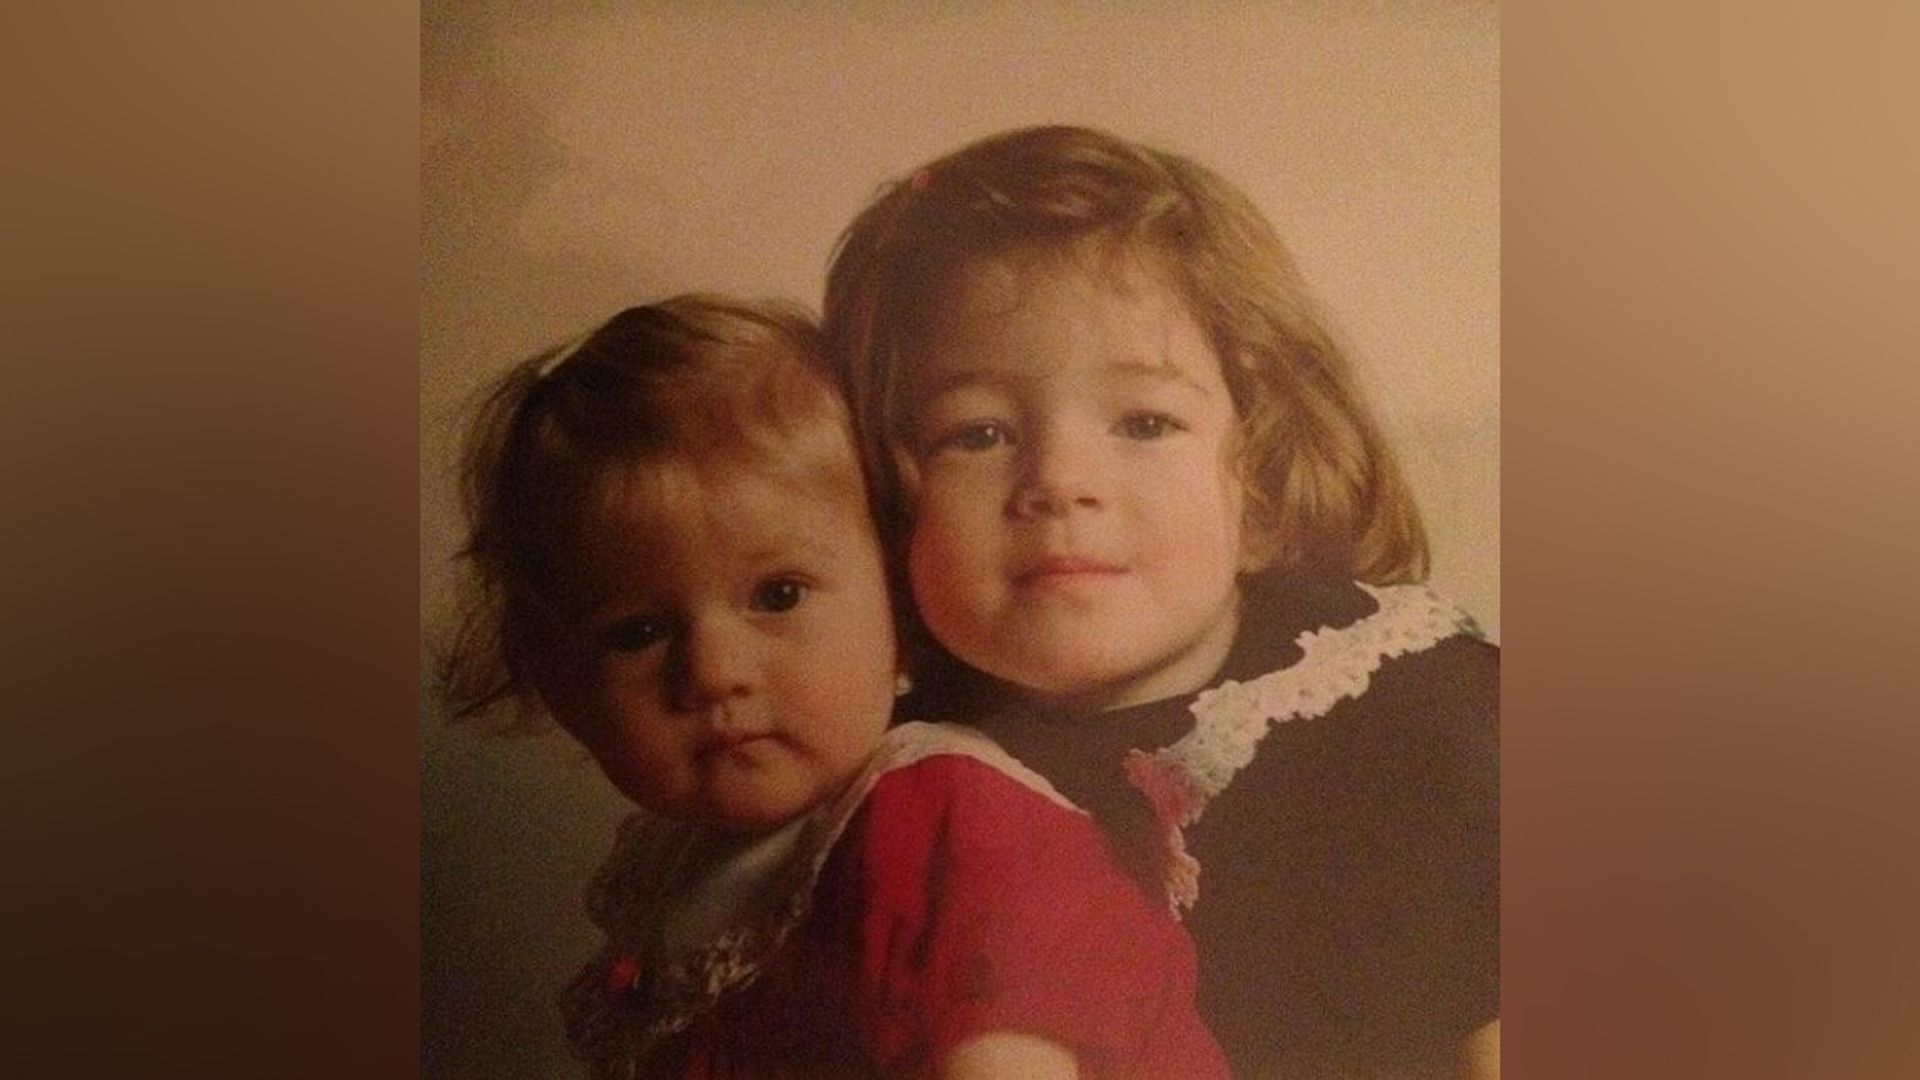 Julia Garner and her sister in childhood